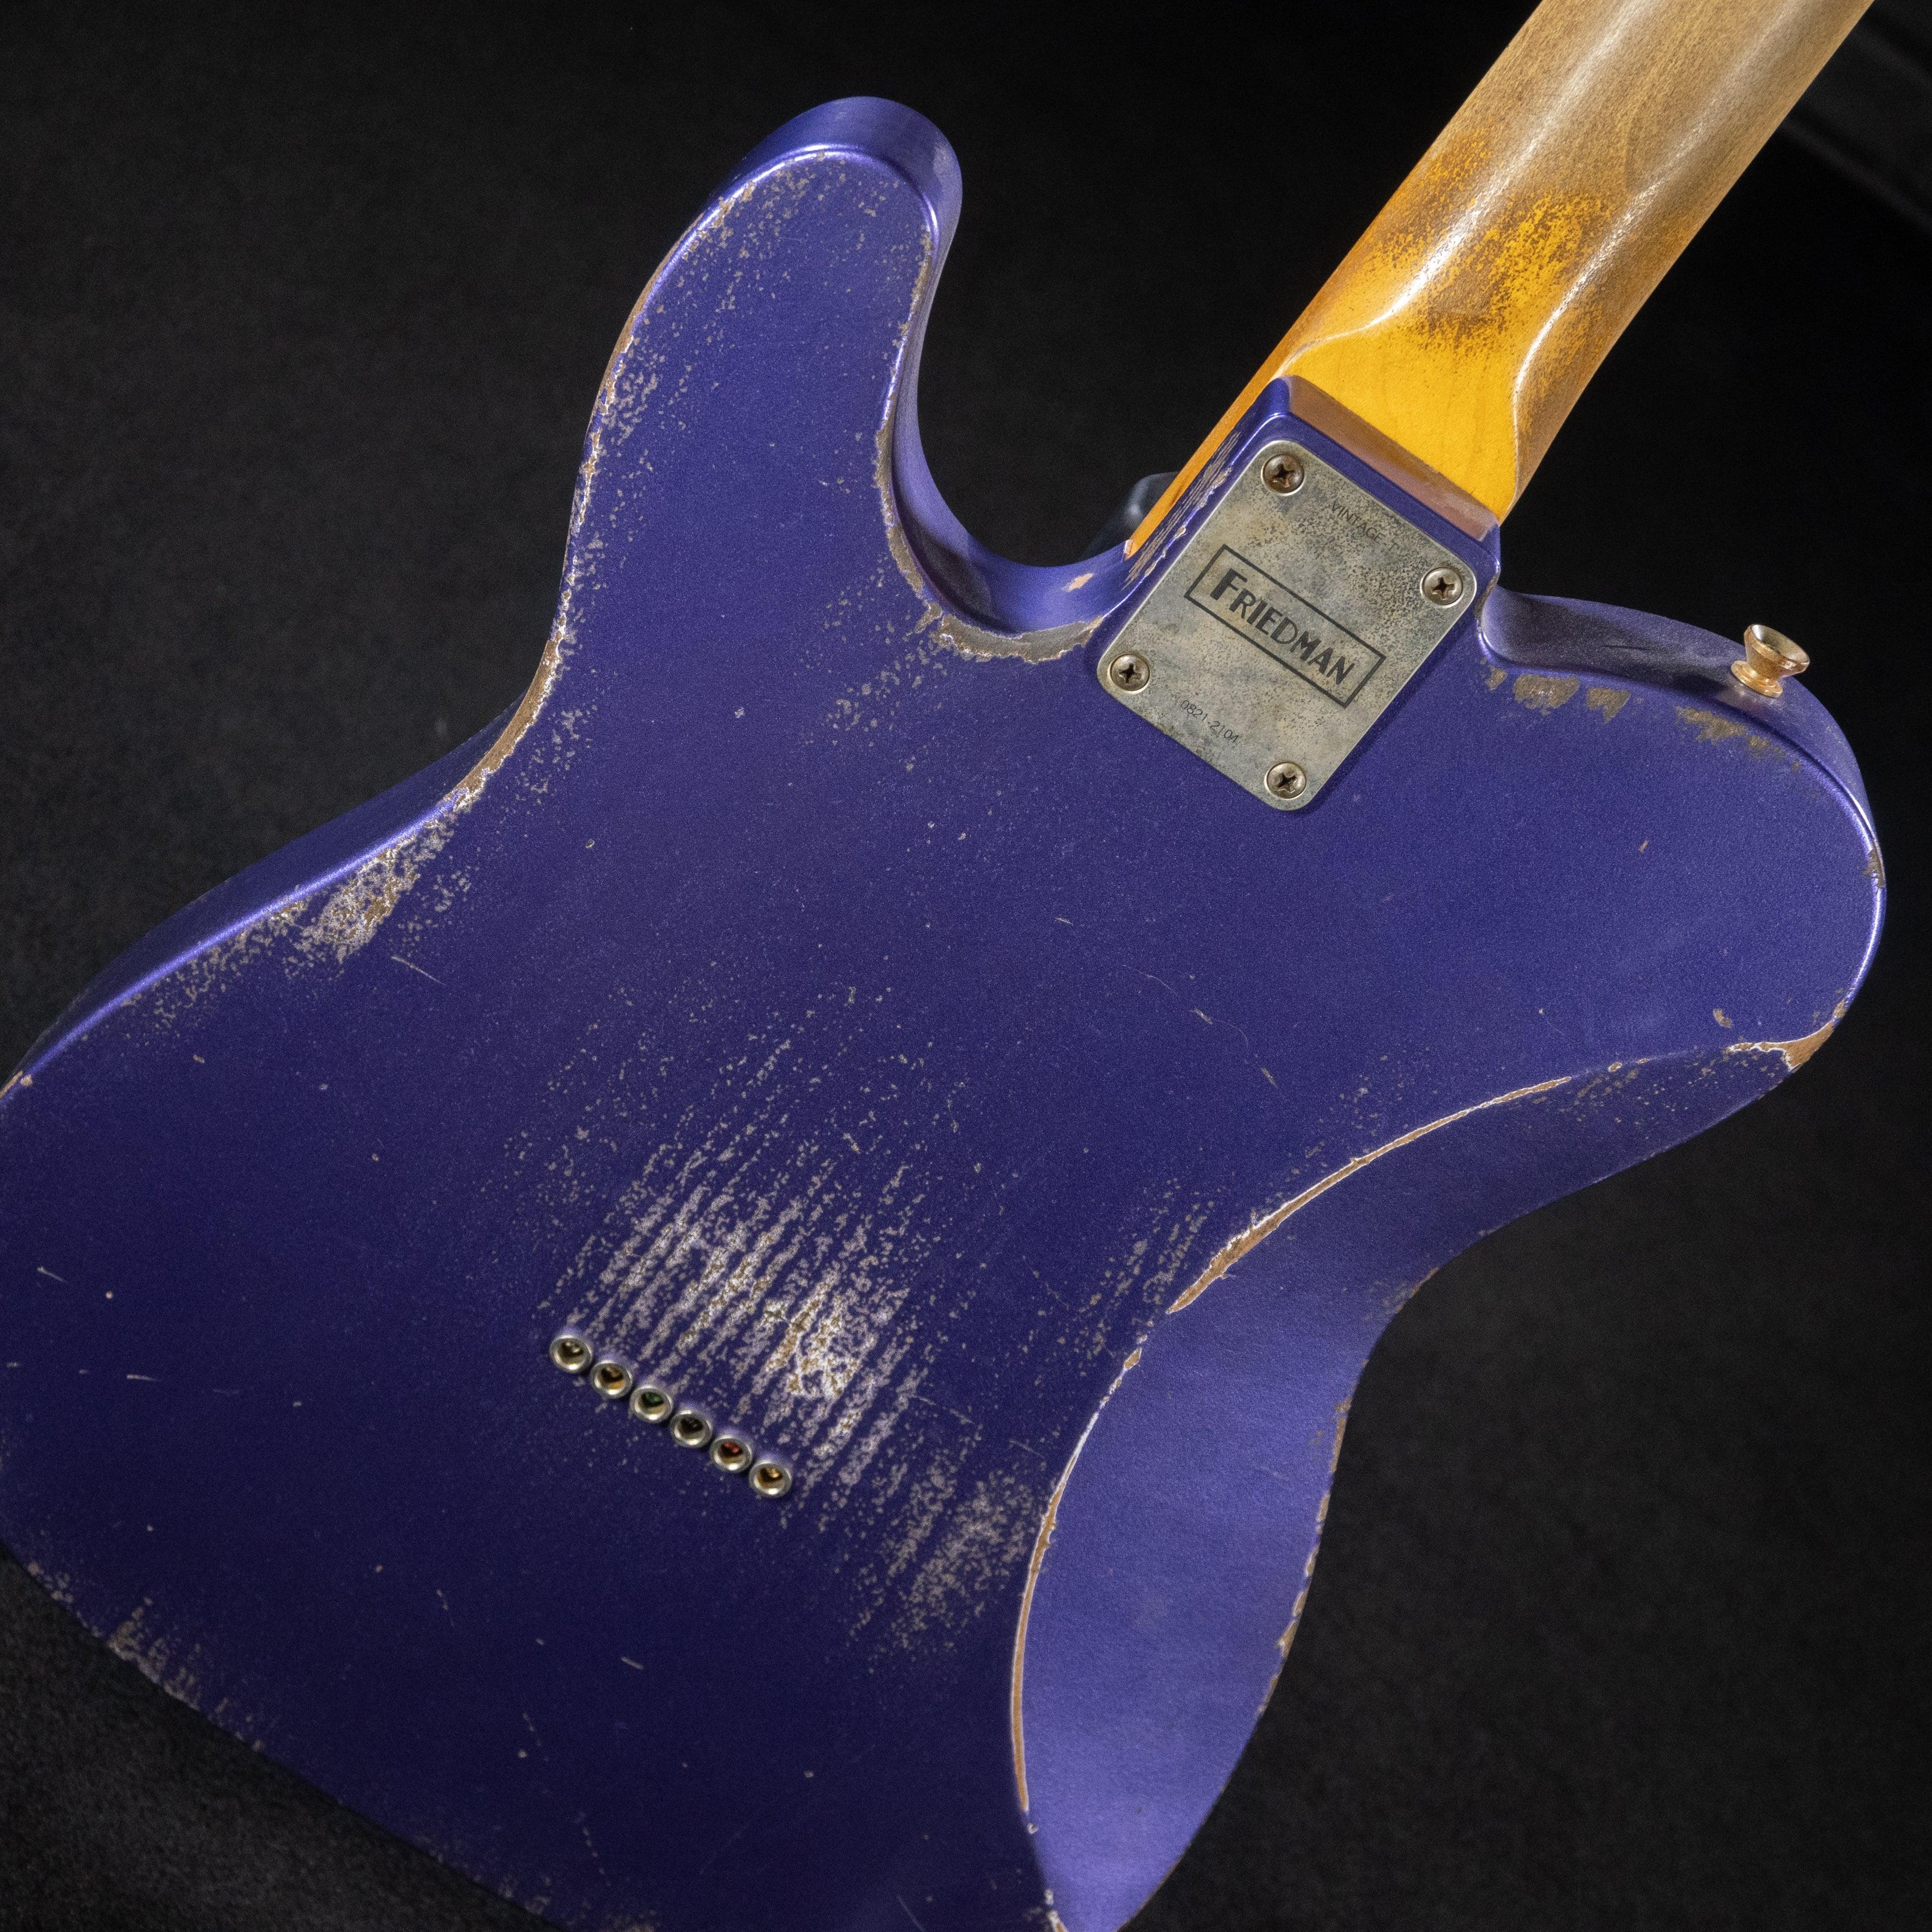 Friedman Vintage T Metallic Purple - Impulse Music Co.